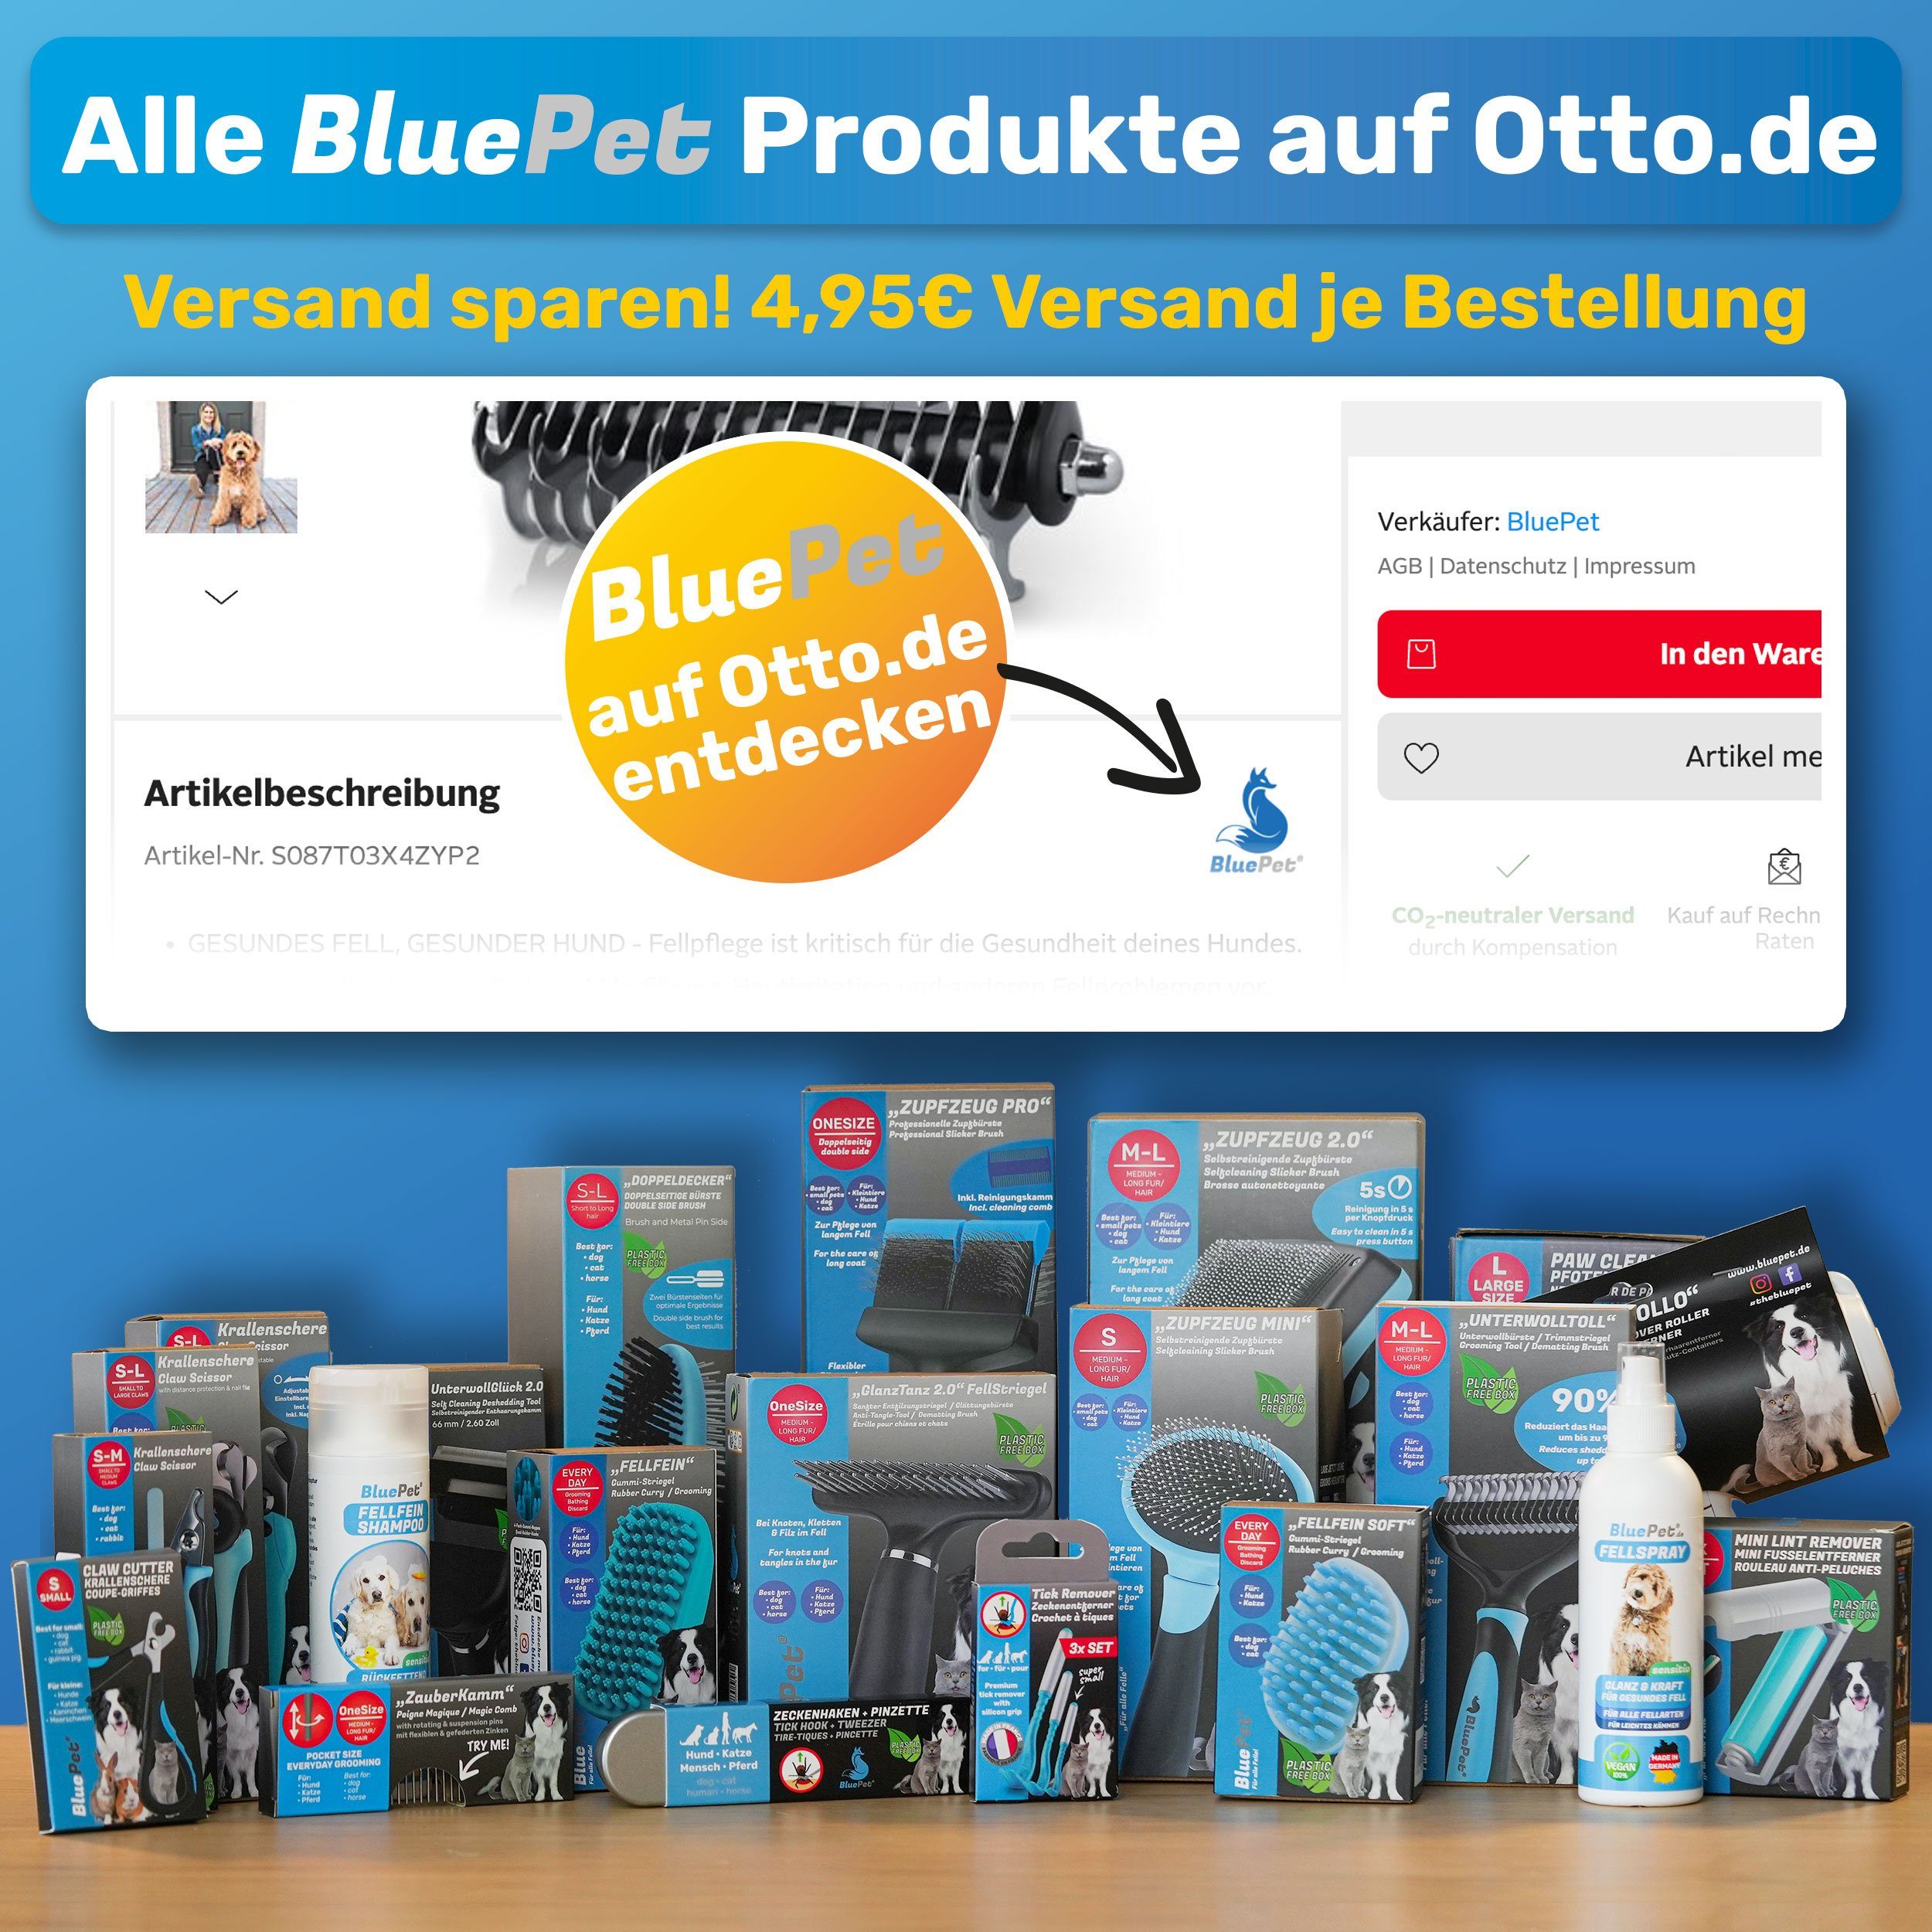 BluePet Zeckenpinzette "Tick-Trick" Zeckenhaken Set Zeckenentfernung in Menschen Zeckenentferner, 3er für France Tiere Blau und Premium Made